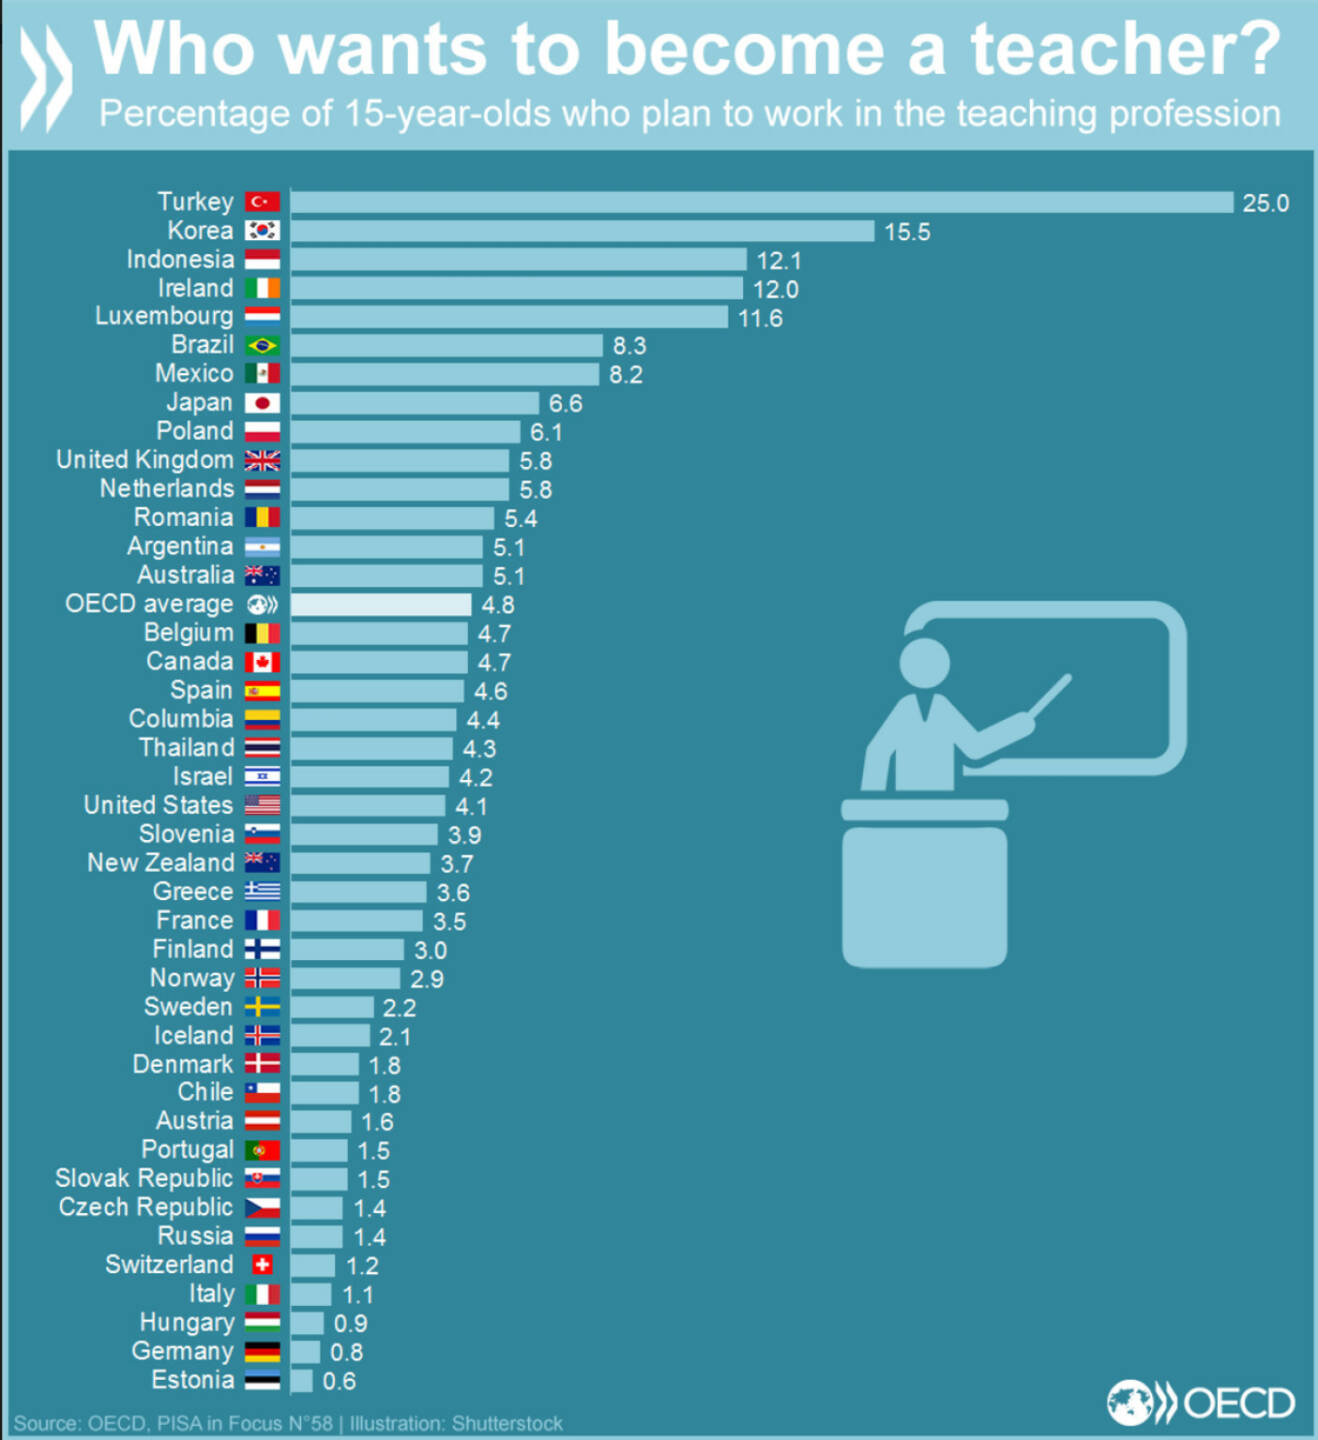 In den OECD-Ländern wollen weniger als 5% der 15 Jährigen Lehrer werden. In Deutschland weniger als 1%, in der Türkei dagegen 25%. http://bit.ly/1M50lWm